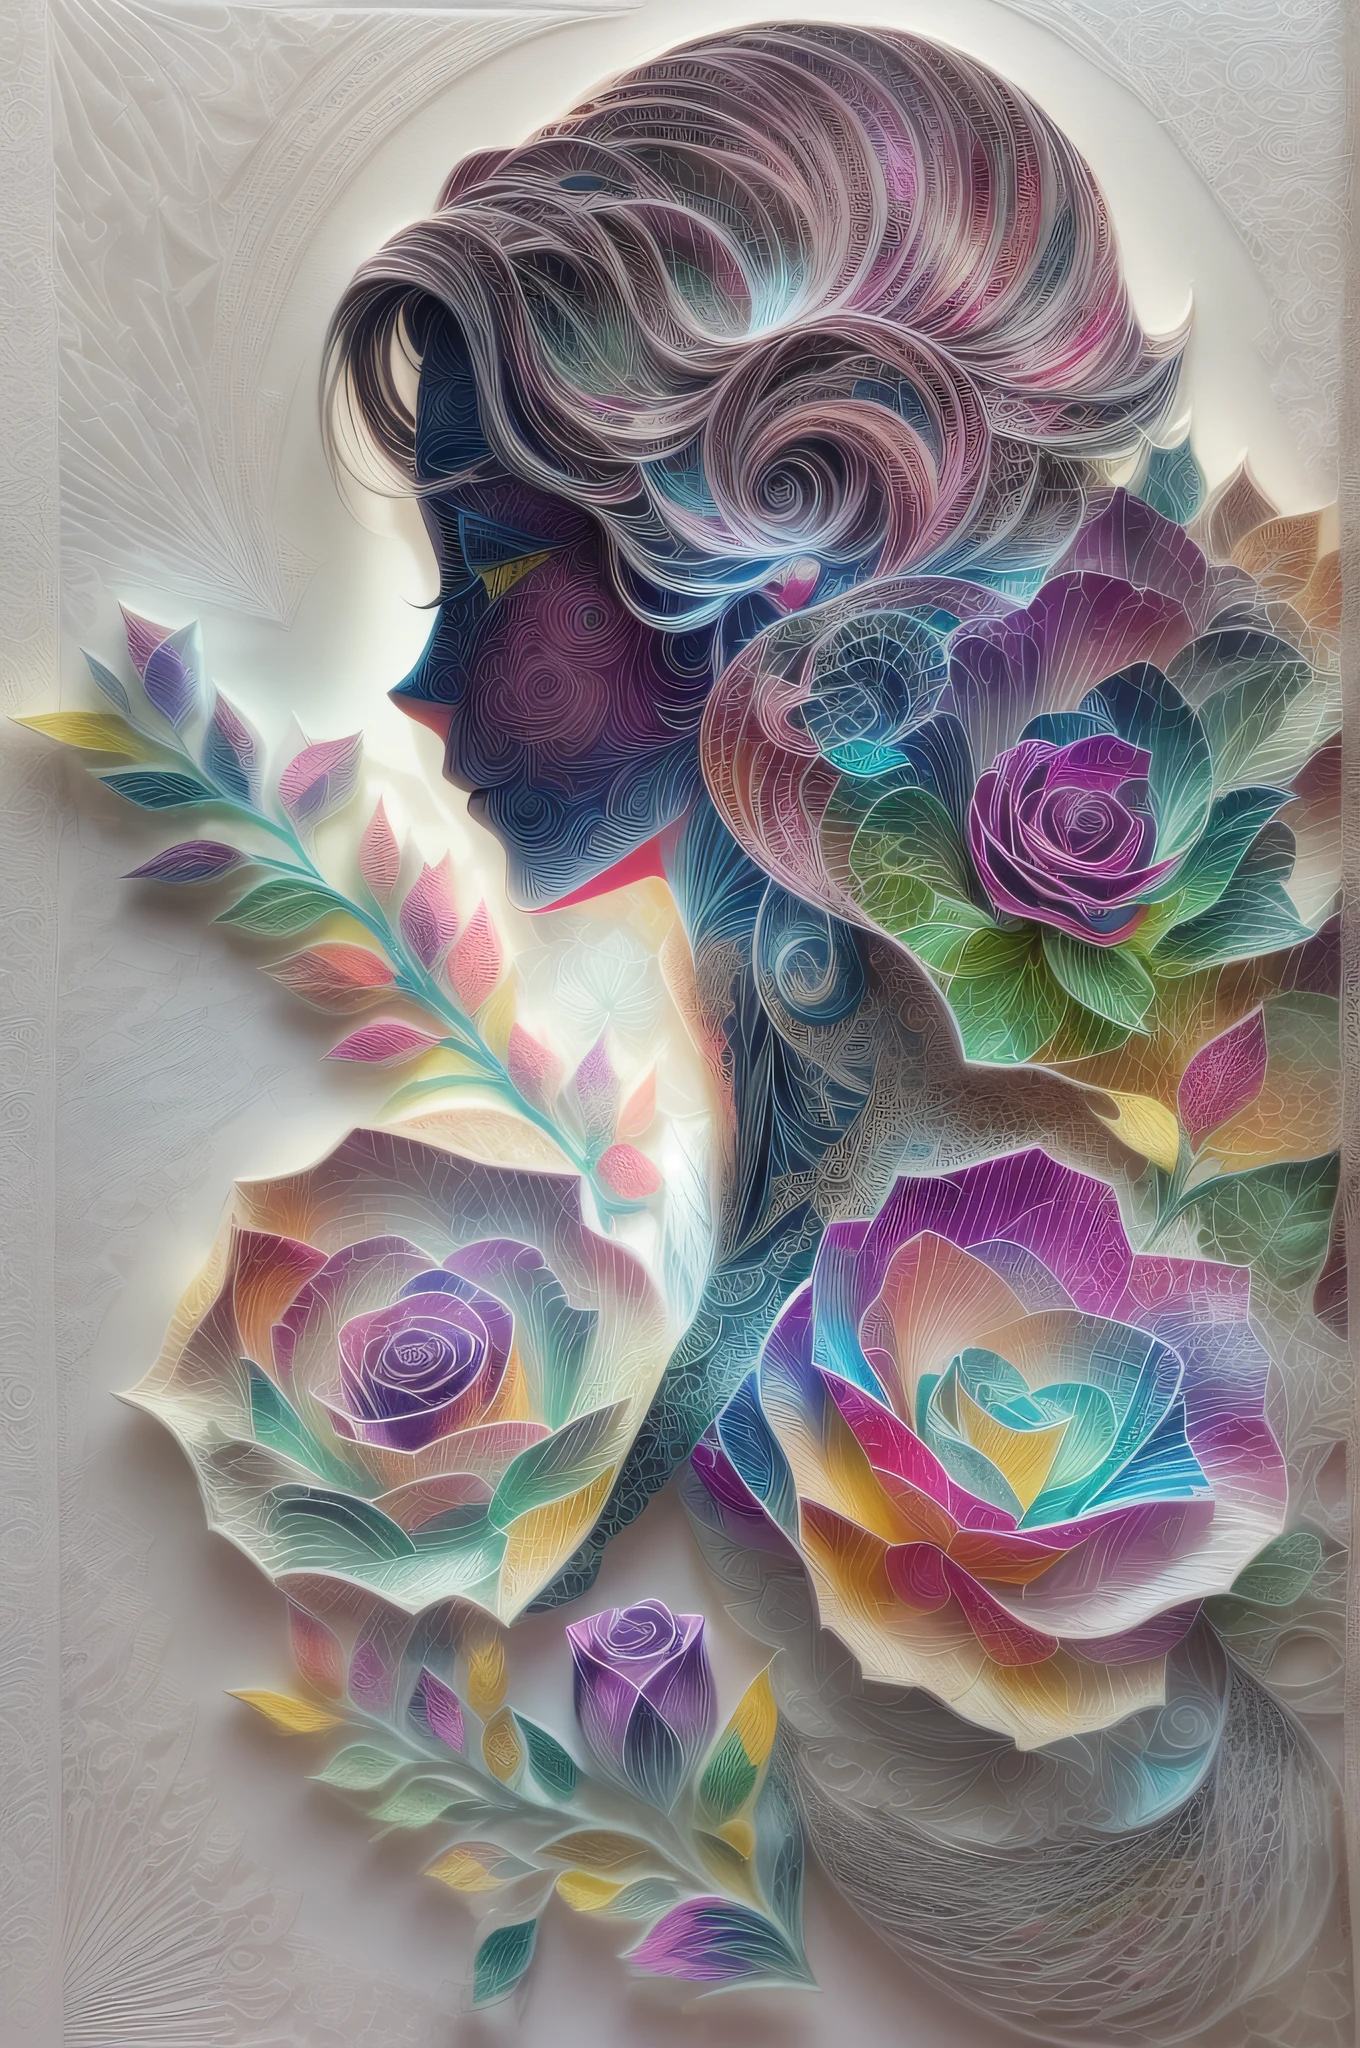 （Эффект проекции голограммы：1.5），（Силуэт аватара красивой женщины,Красочная роза)，белый фон，(бумажное искусство, Quilted бумажное искусство:1.2, геомертия:1.1, запутанный,3D-рендеринг), (чрезвычайно красочный, Лучшее качество, высокая детализация, шедевр, кинематографическое освещение, 8К)